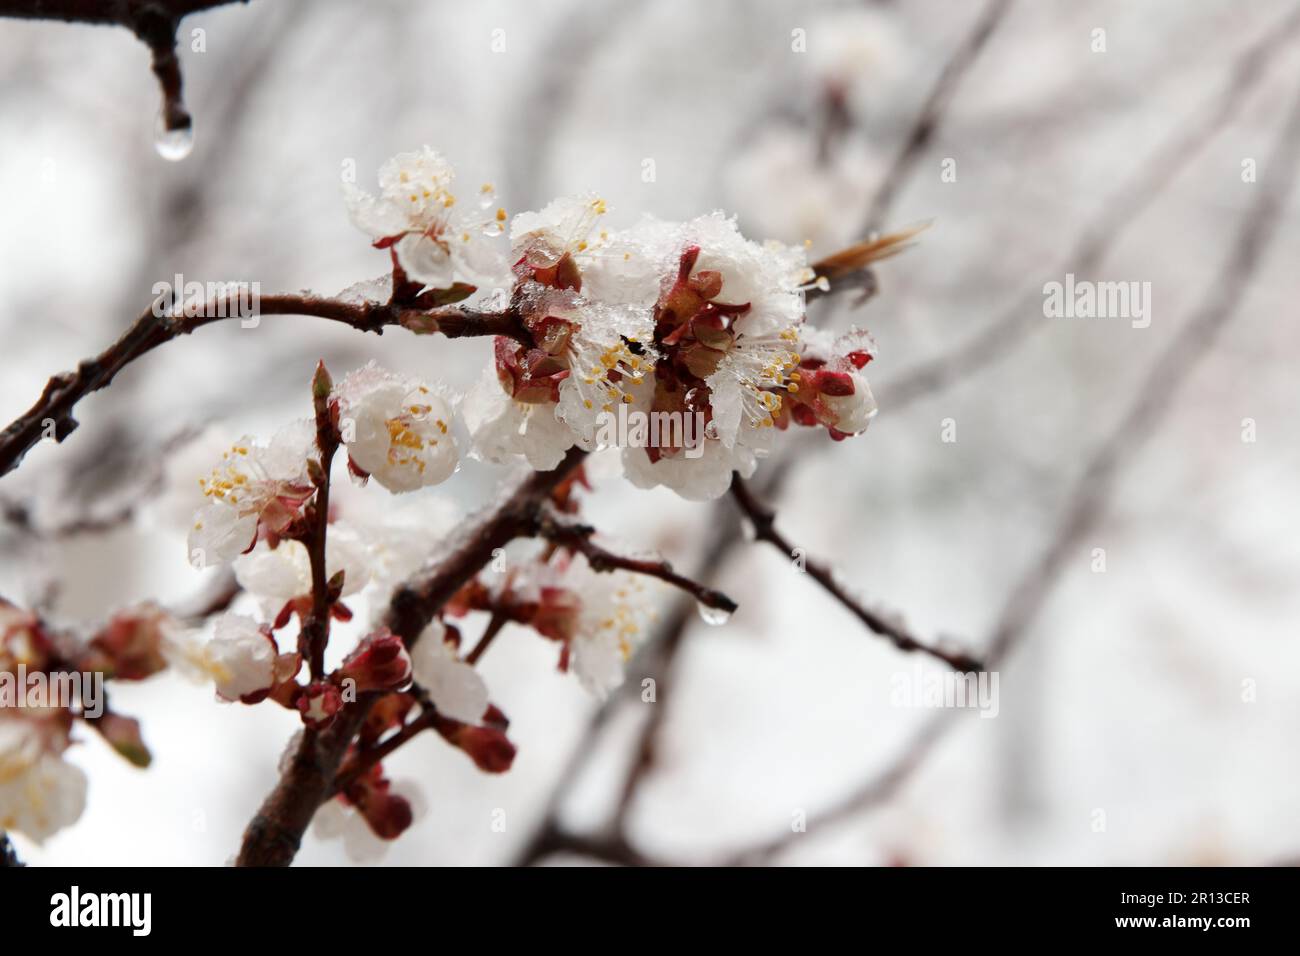 Eine scharfe Kälte mit Regen und Schnee fiel auf einen Aprikosenobstbaum, der im Frühling mit dichten weißen Blumen im Garten blühte. Stockfoto